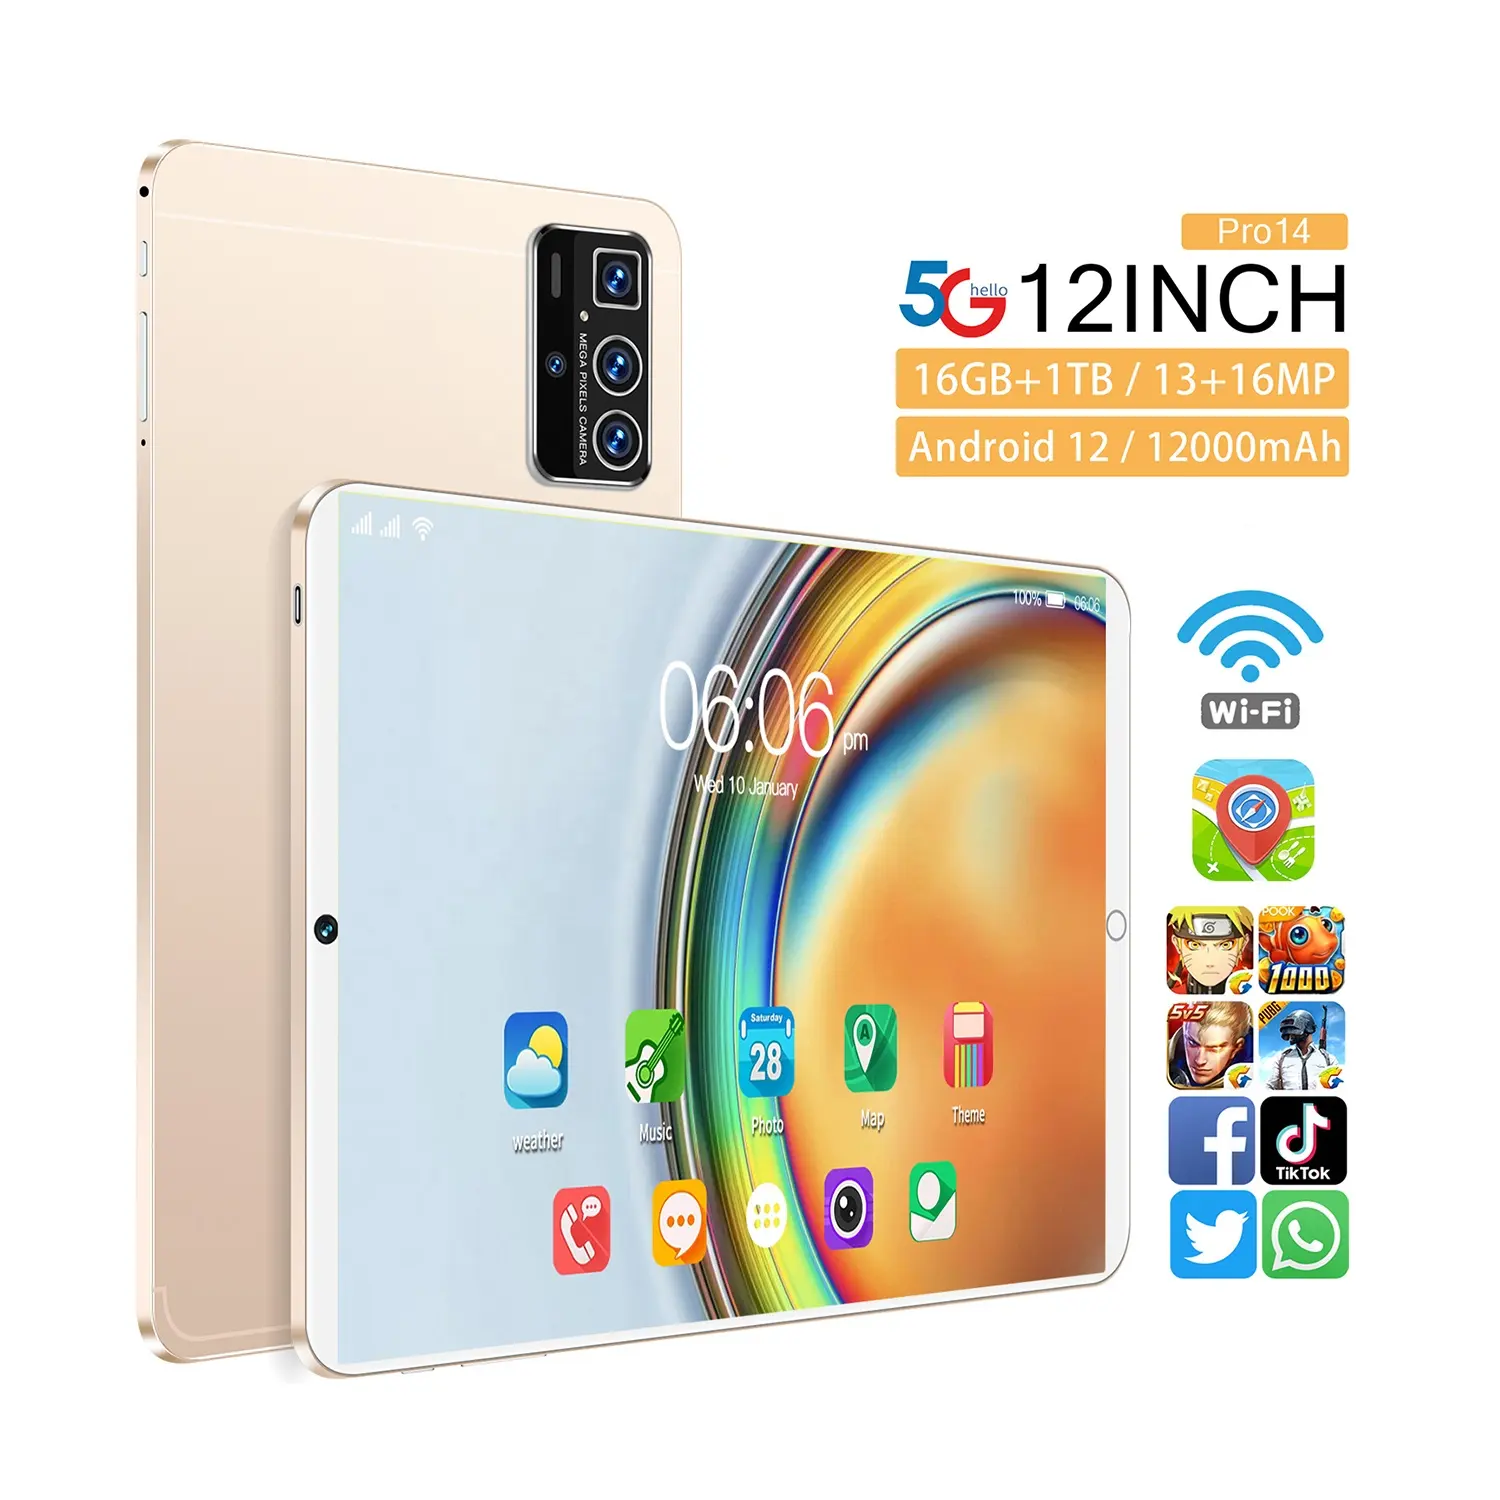 Yeni Pro 14 12 inç HD ekran 10 çekirdekli Android 12 sistem telefon 12000mAh kapasiteli tablet çılgın satın alma